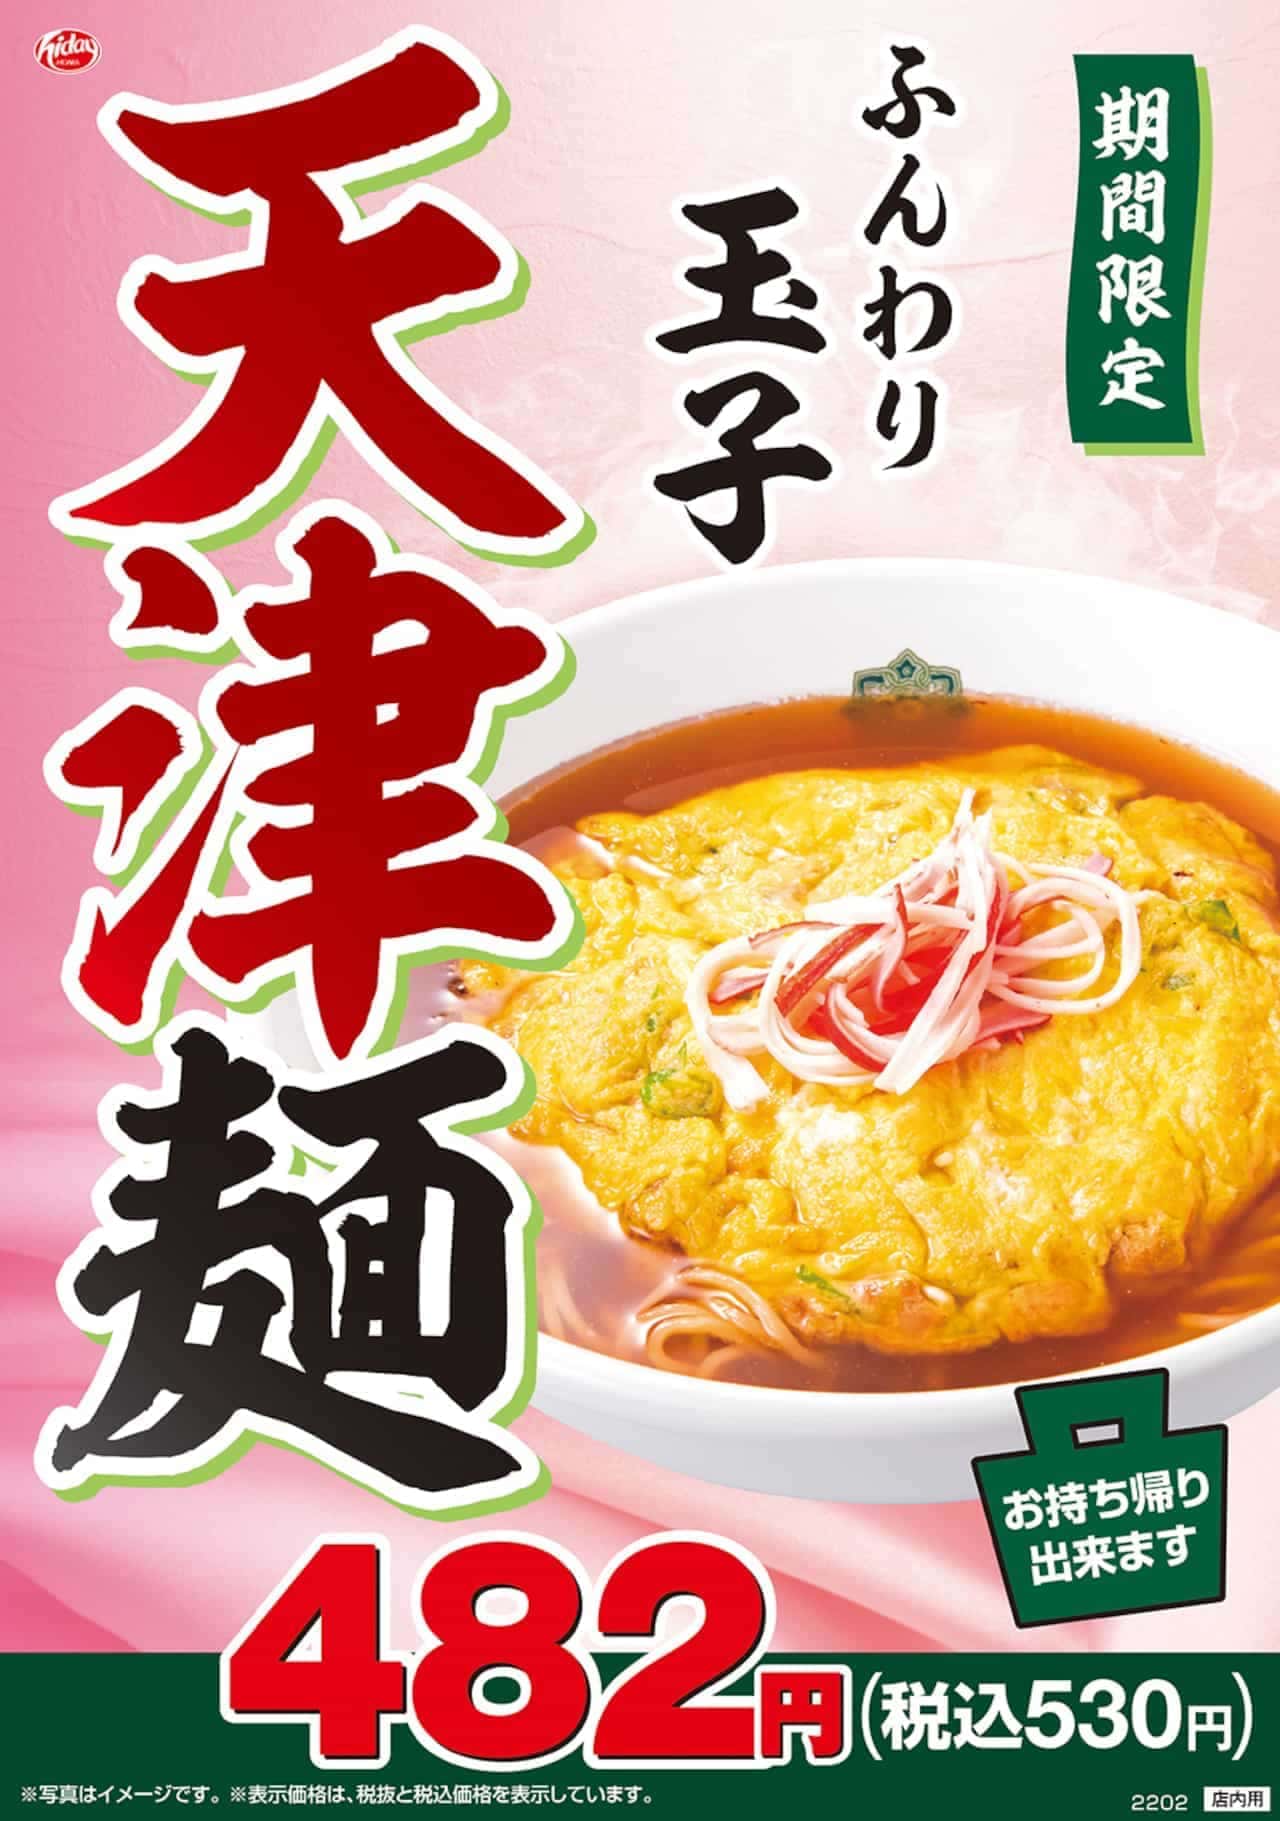 Hidakaya "Tenshin Noodles